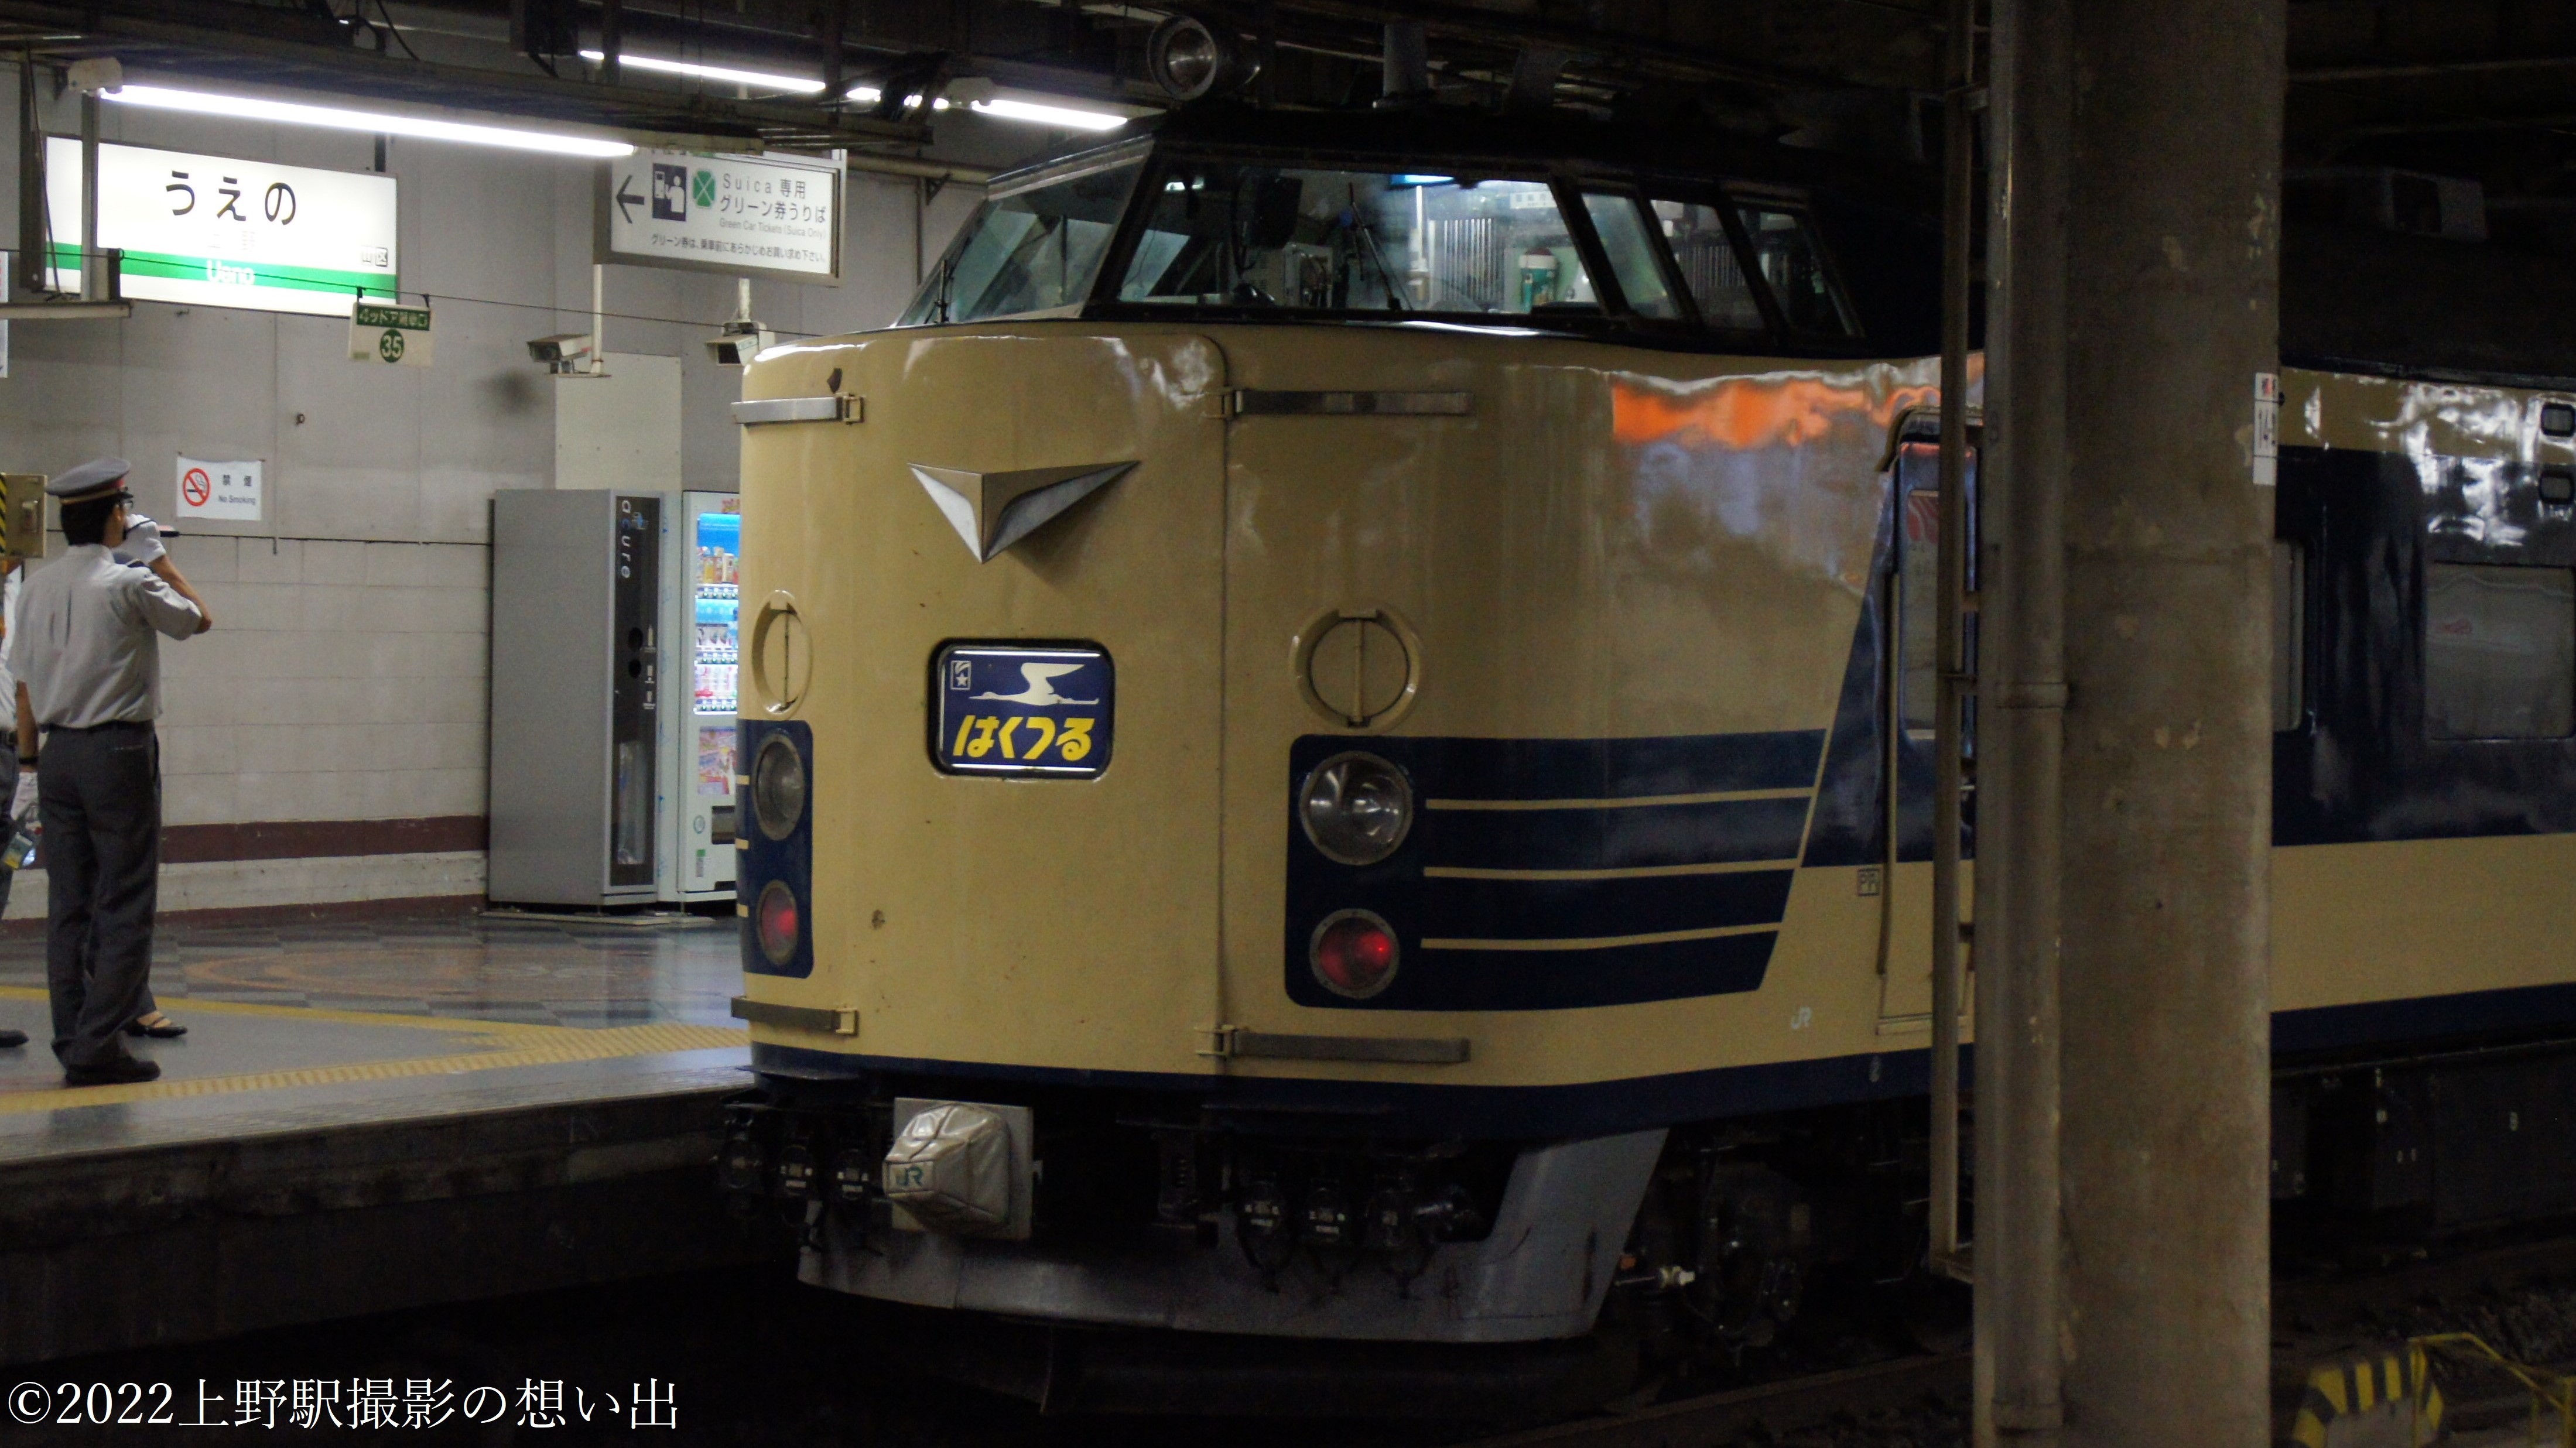 上野駅名標と「はくつる」幕